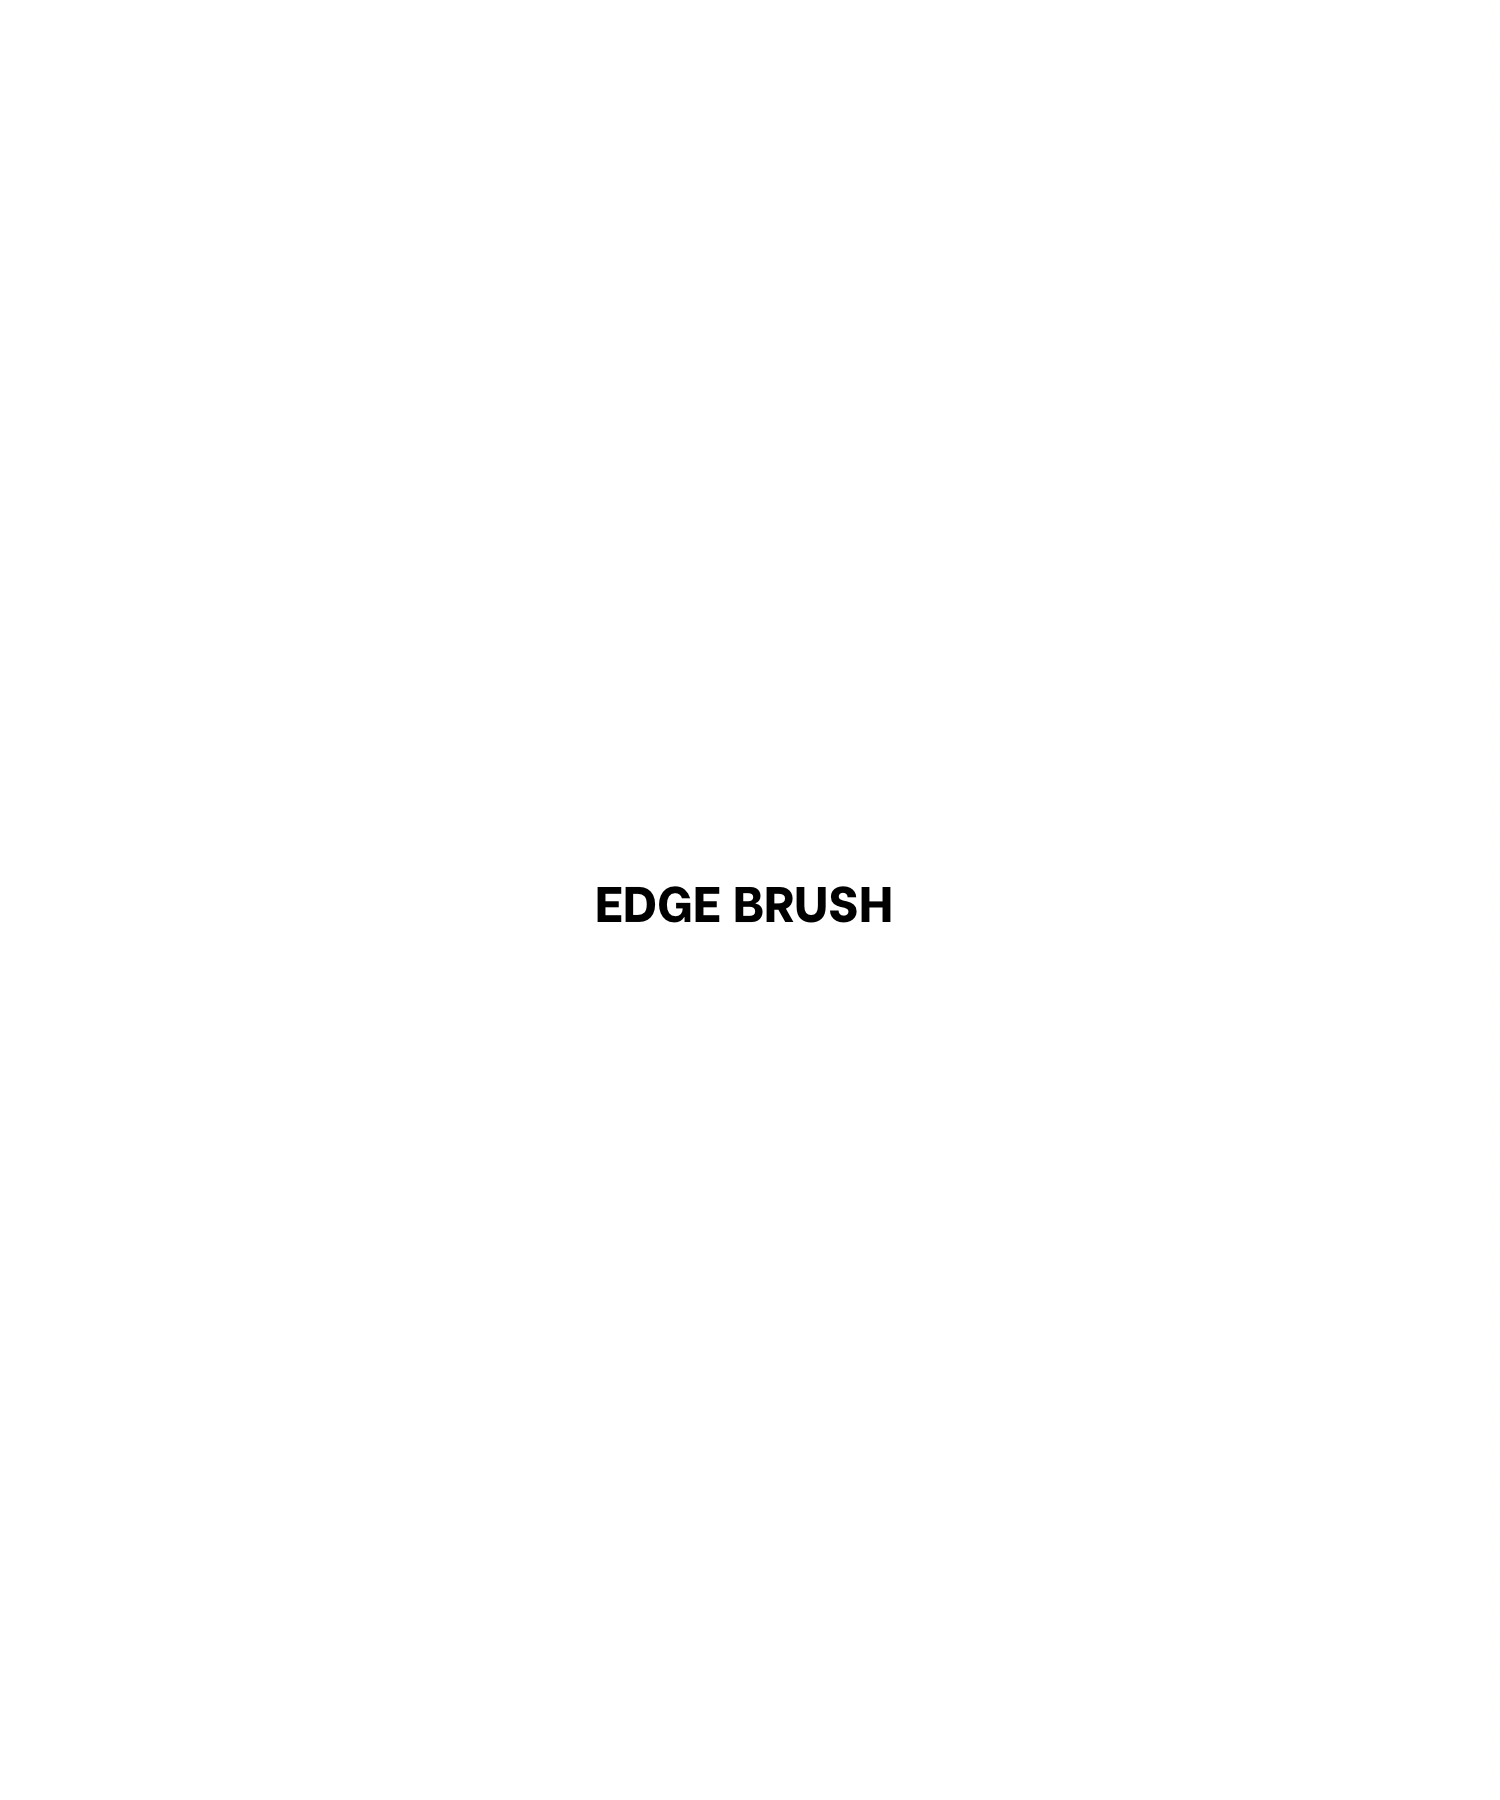 Edge Brush